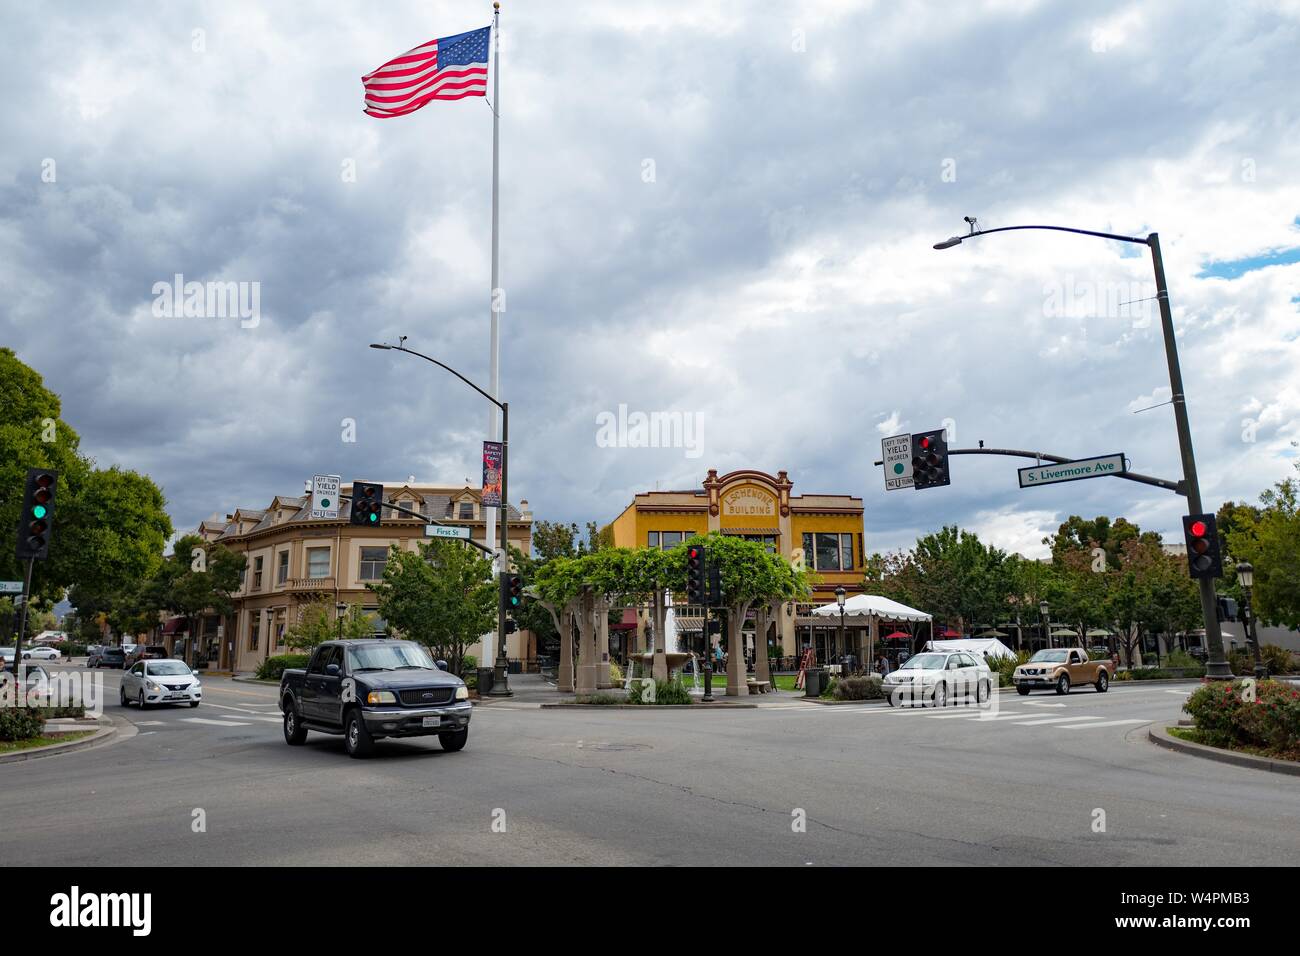 Le centre-ville de Livermore, notamment le célèbre Mât Livermore et plusieurs bâtiments historiques sont visibles sous un ciel dramatique sur la Première Avenue, la rue principale au centre-ville de Livermore, Californie, le 3 octobre 2018. () Banque D'Images